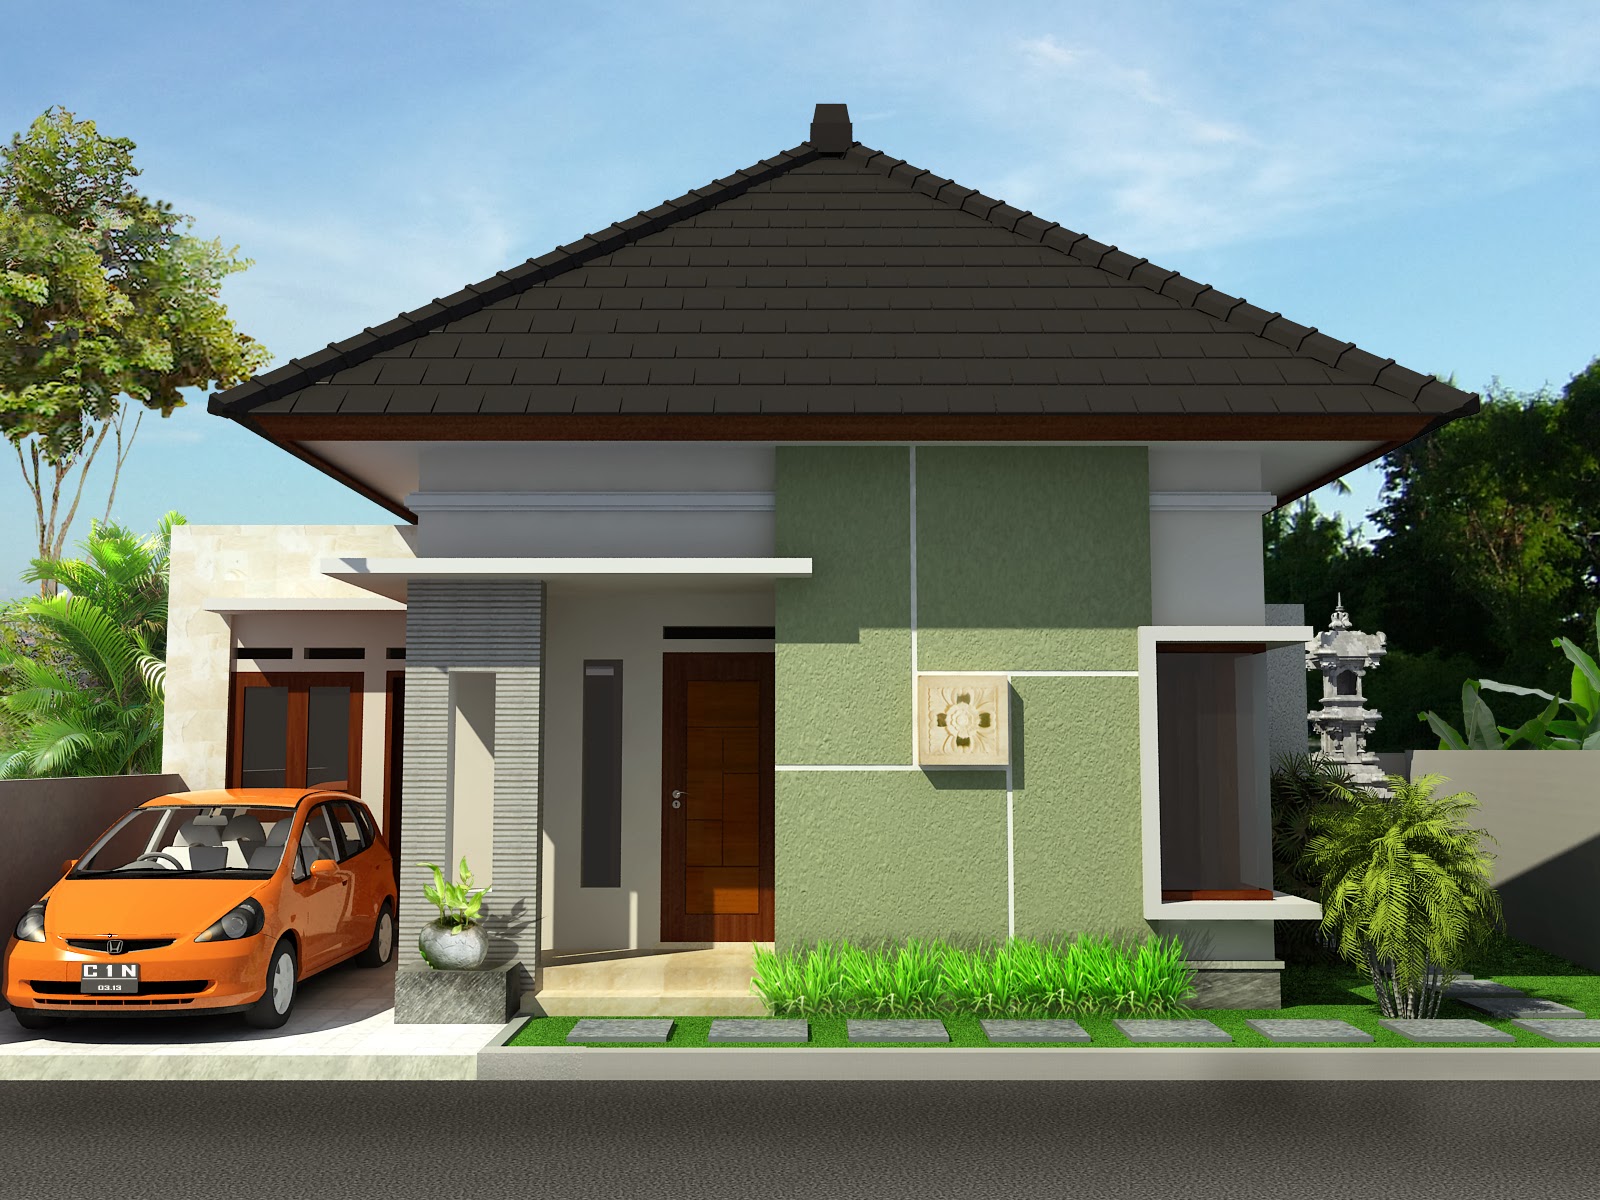 Desain Rumah Minimalis 1 Lantai Sederhana  Terbaru 2016